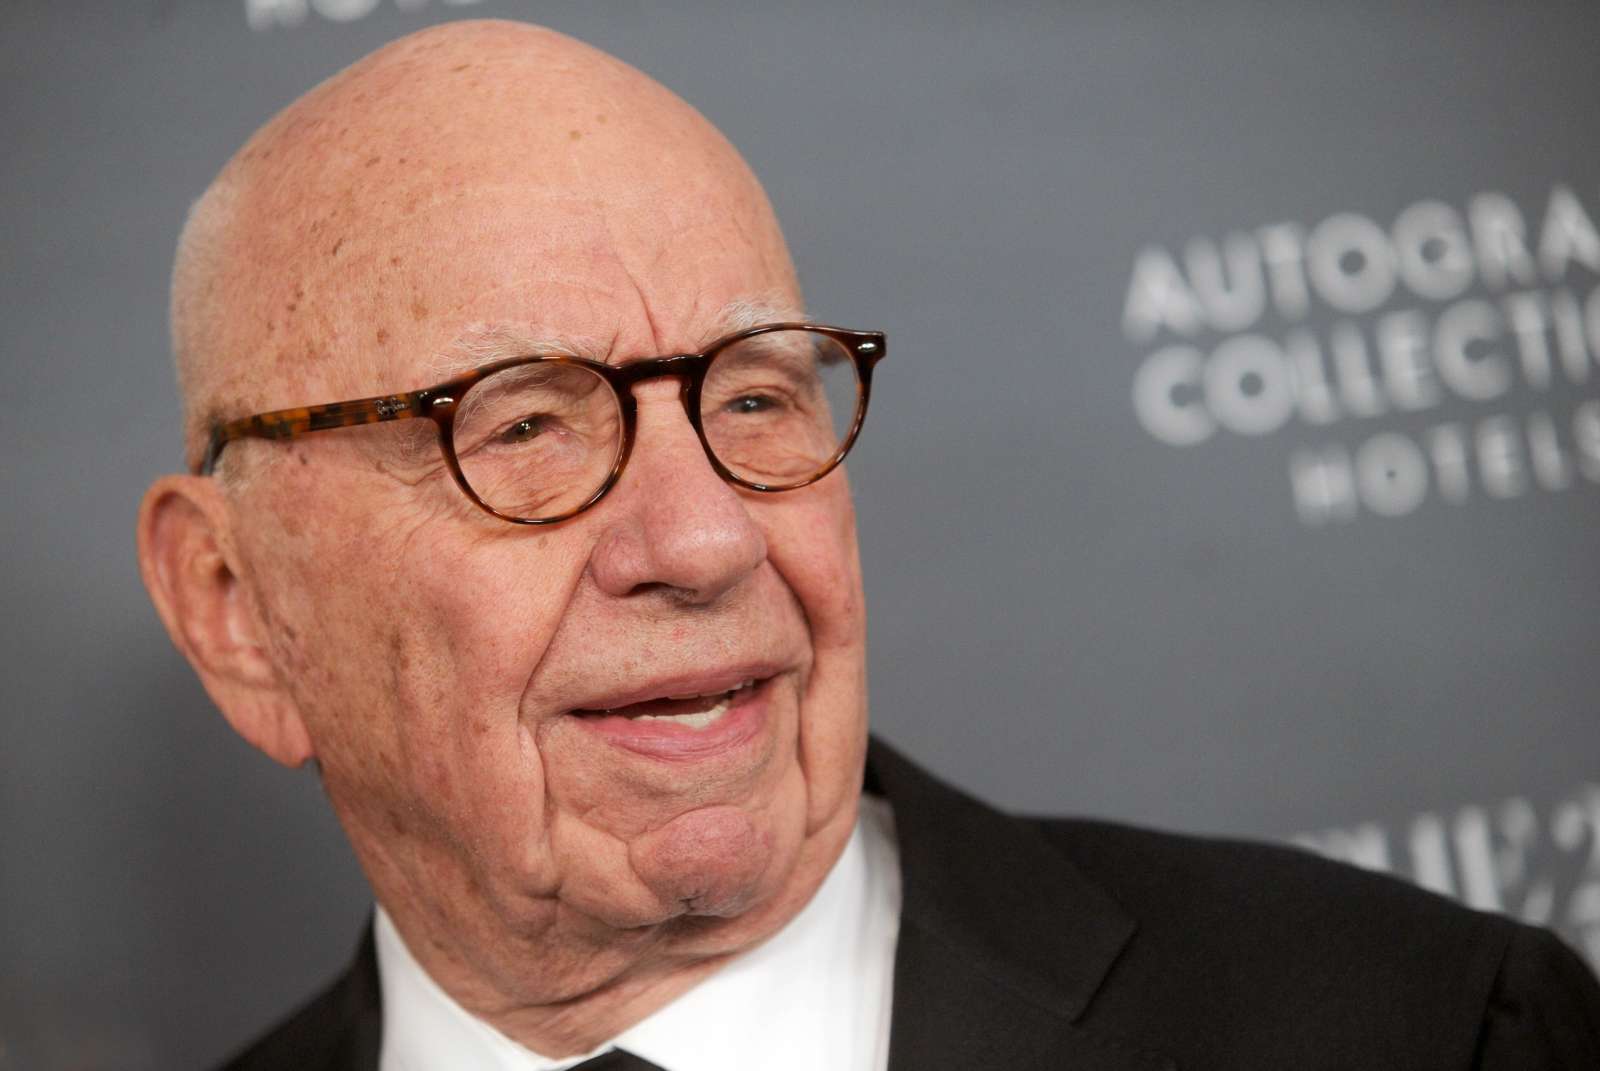 Rupert Murdoch Net Worth How Much He Made After DisneyFox Deal Money